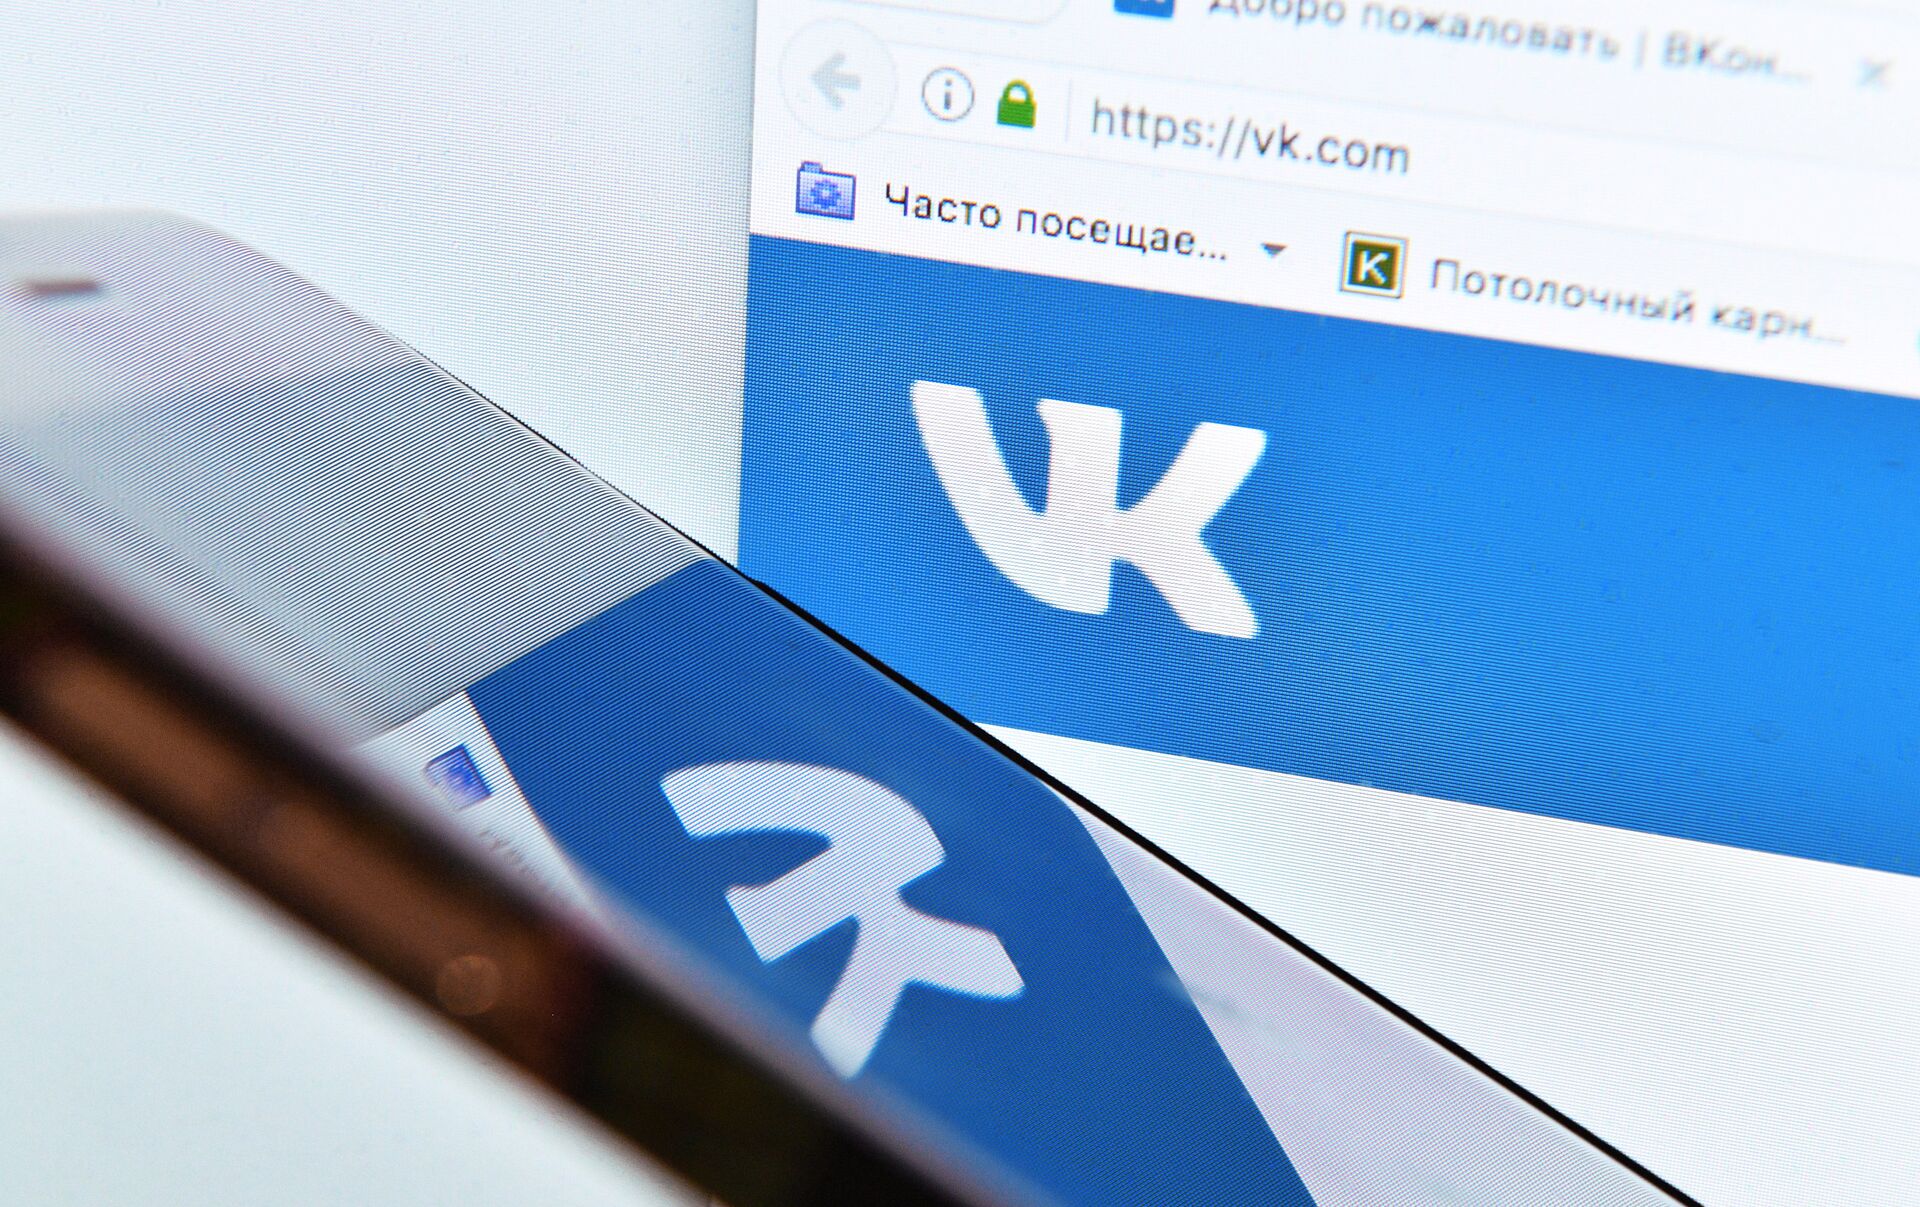 La racha sigue: VK.com es atacada y quedan expuestos los datos de